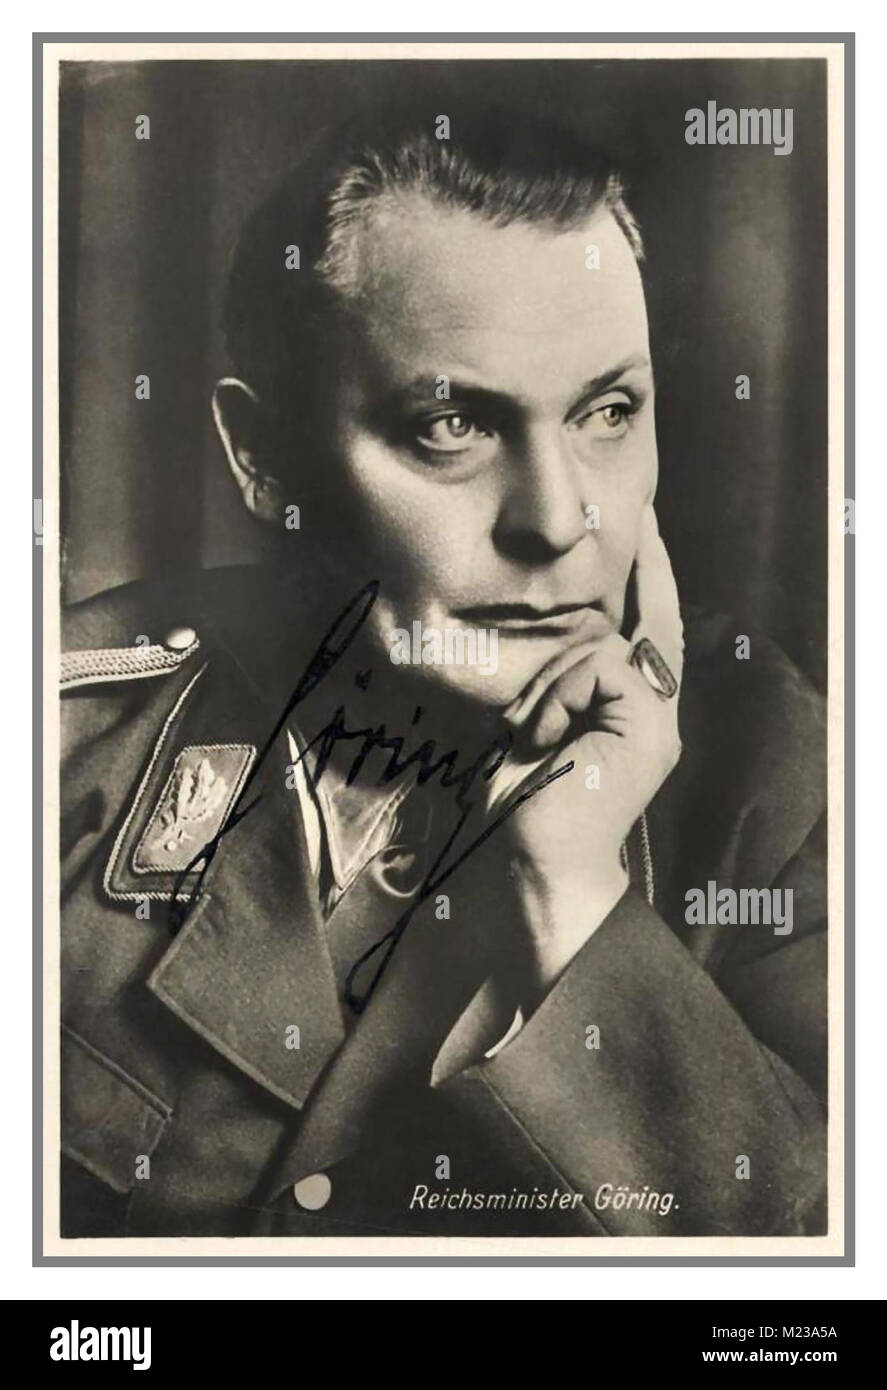 GOERING NAZI Jahrgang 1930 die formelle Unterzeichnung Porträt des deutschen NS-Reichsminister Hermann Wilhelm Göring in Uniform Stockfoto